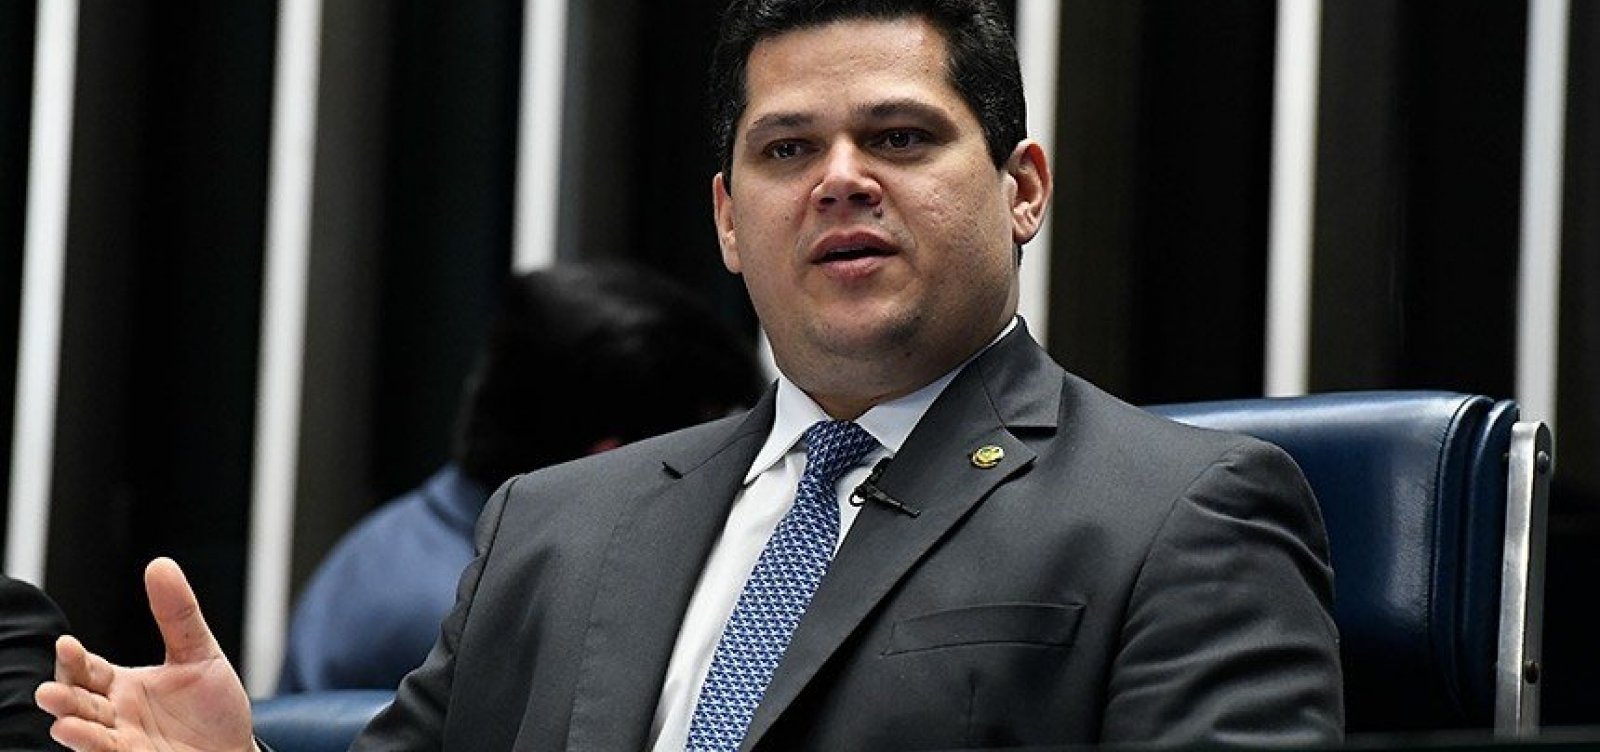 Senado questionará no STF ação da PF no gabinete de líder do governo, diz Alcolumbre